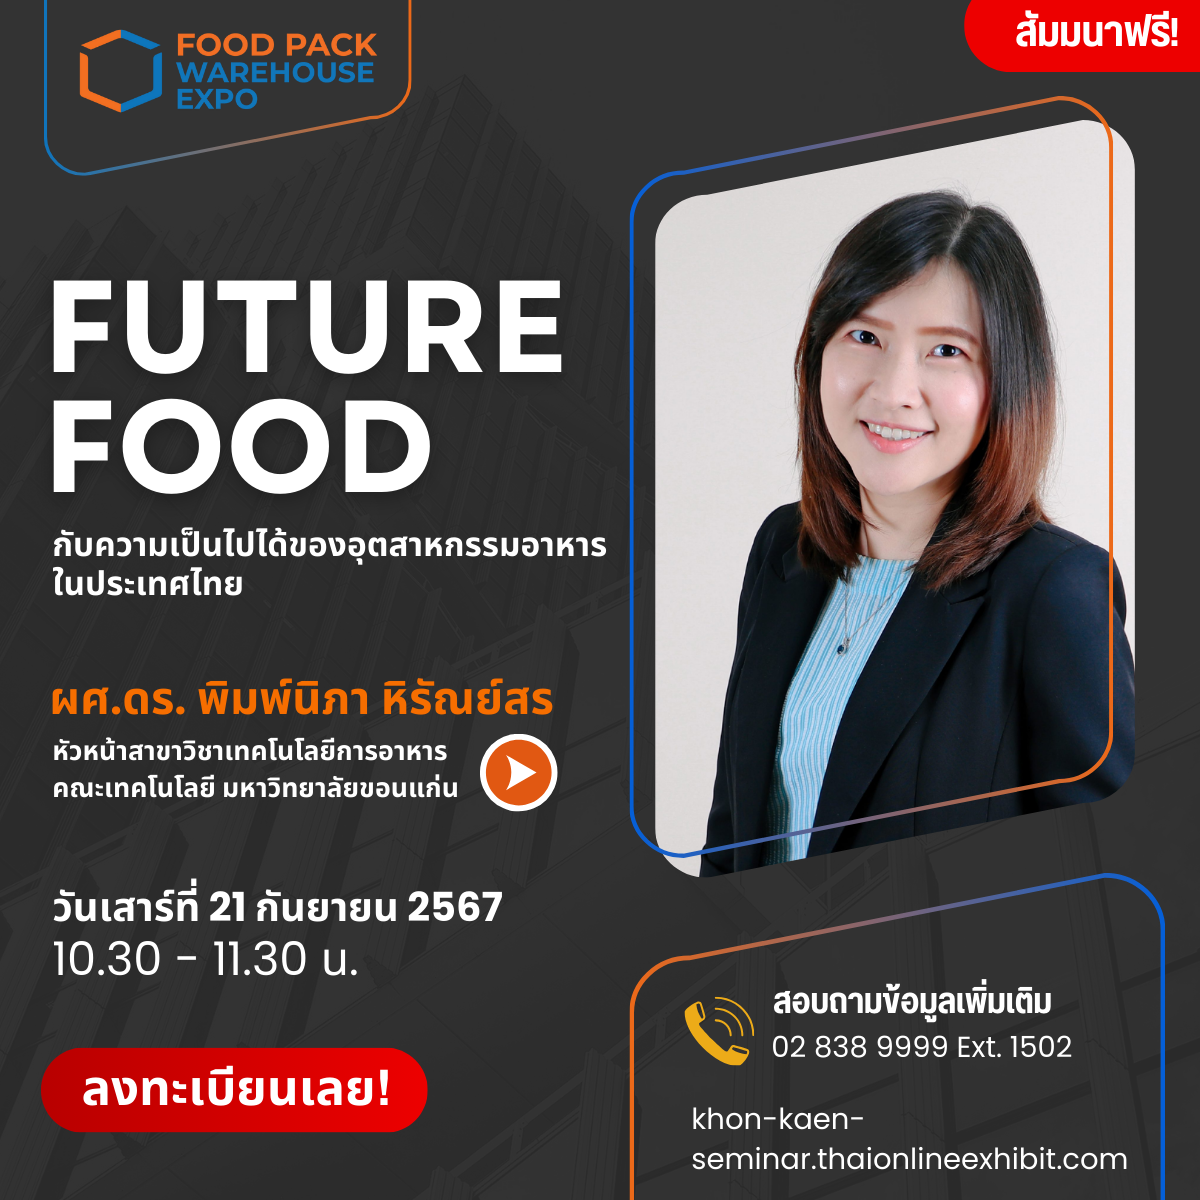 FUTURE FOOD กับความเป็นไปได้ของอุตสาหกรรมอาหาร ในประเทศไทย